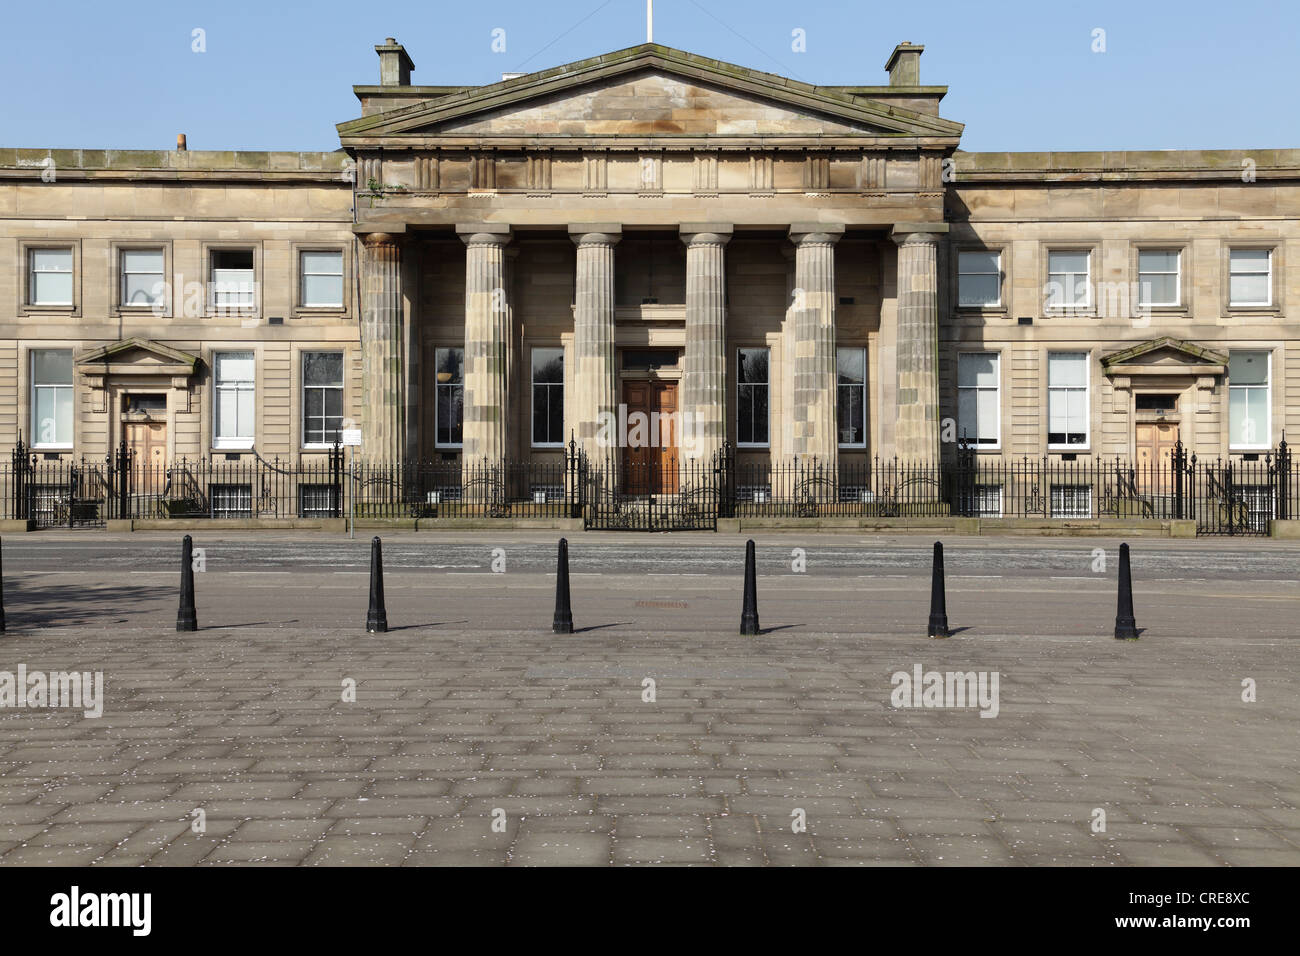 Glasgow ancienne Haute Cour le Saltmarket, Ecosse, Royaume-Uni Banque D'Images